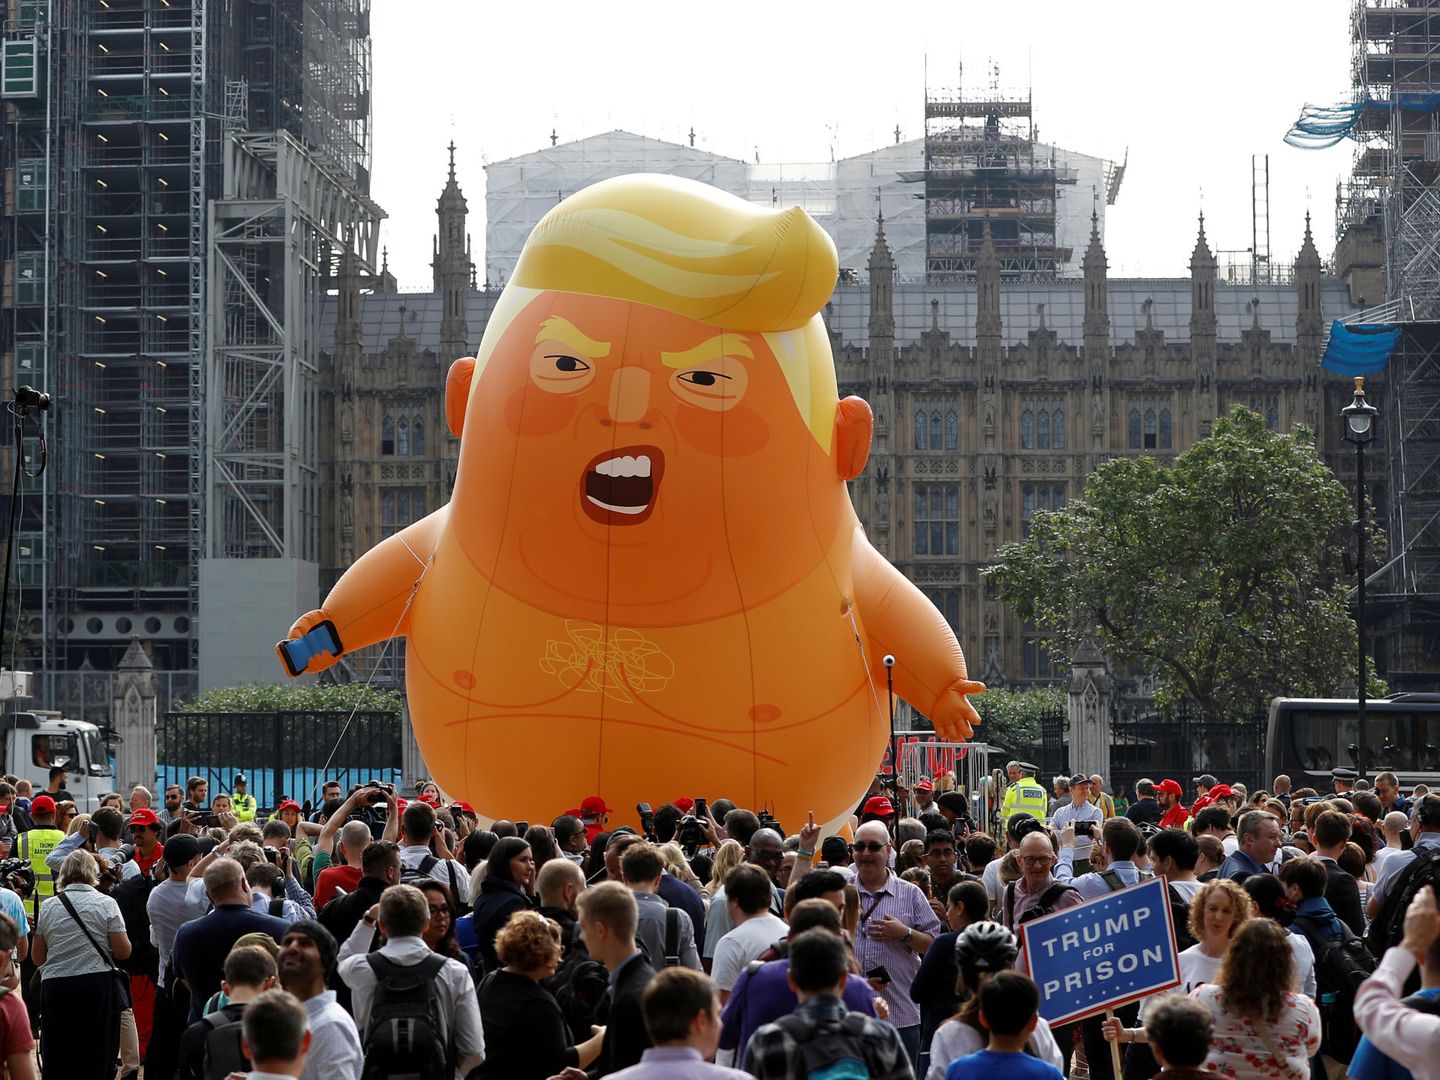 Un globo que representa a Donald Trump como un bebé enfadado, durante las protestas contra la visita del presidente estadounidense al Reino Unido, hoy en Londres. (Reuters)